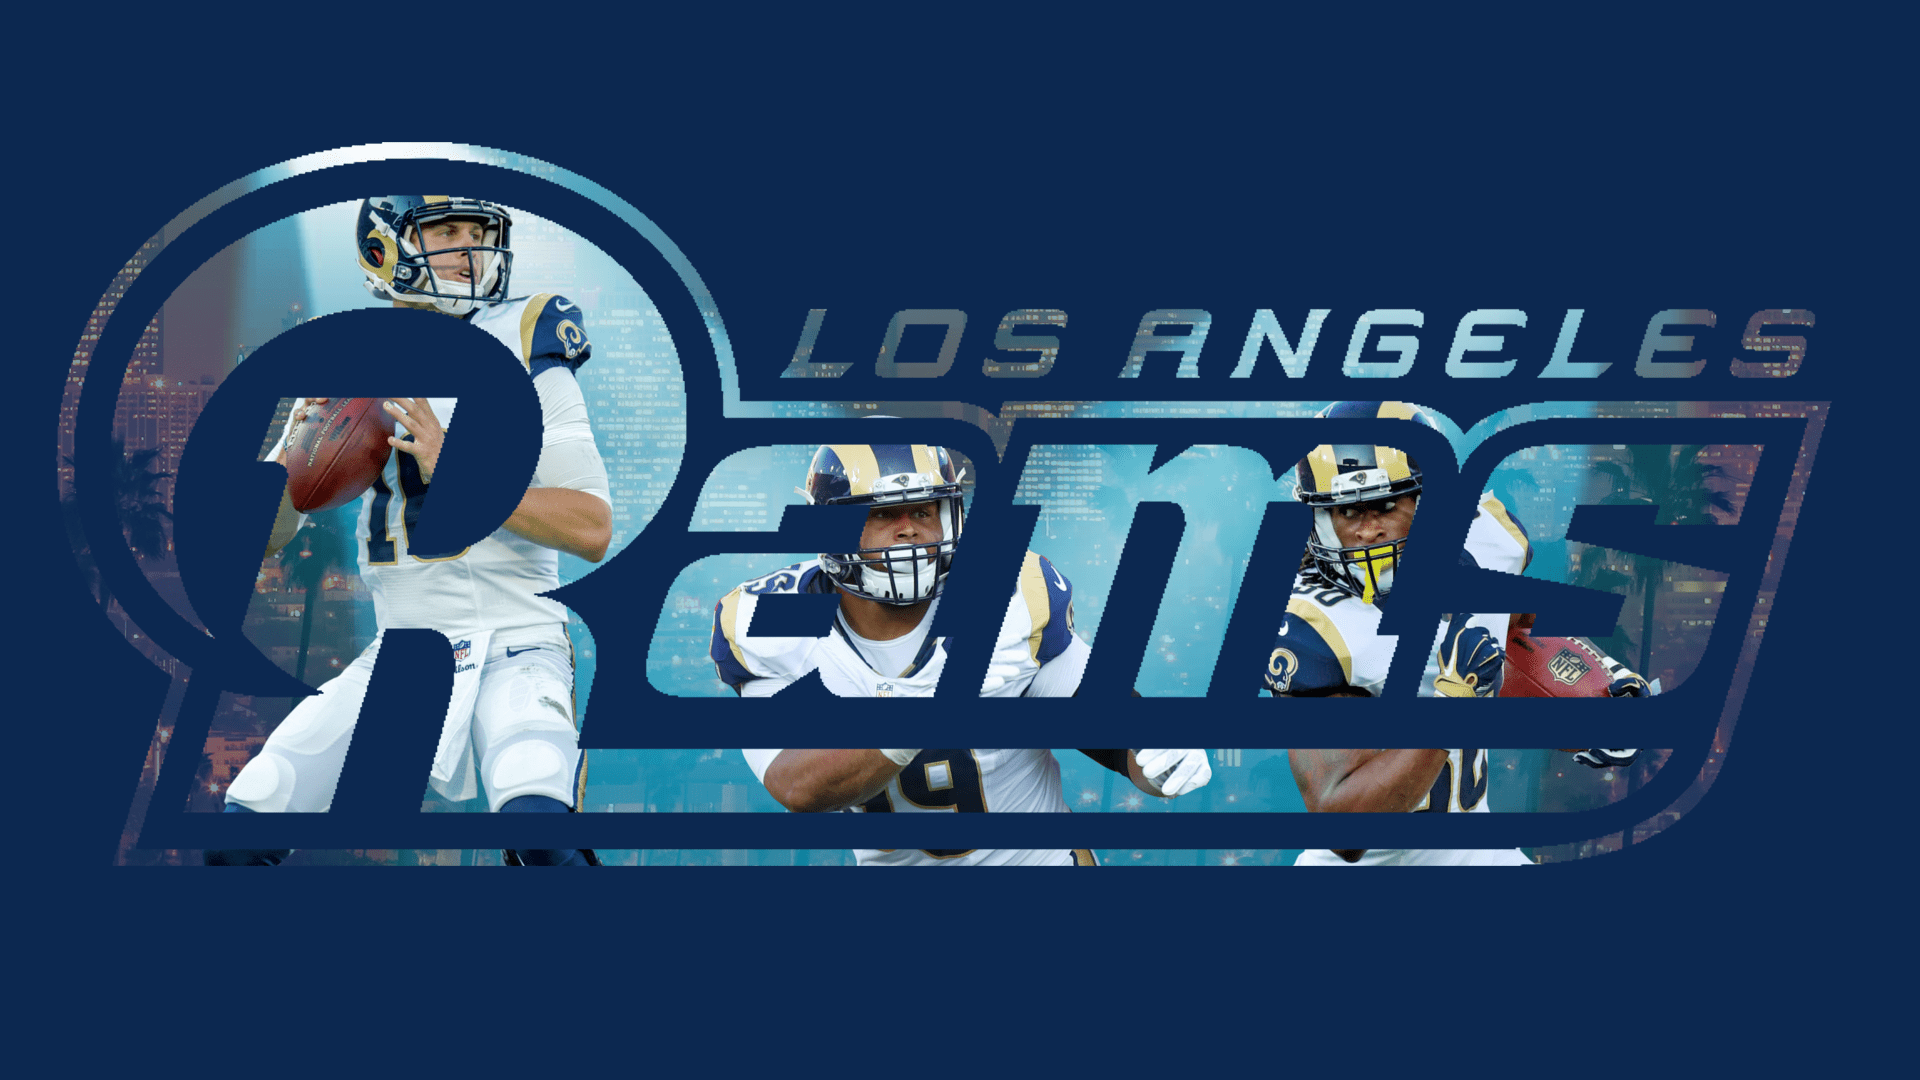 Los Angeles Rams Wallpapers - Top Free